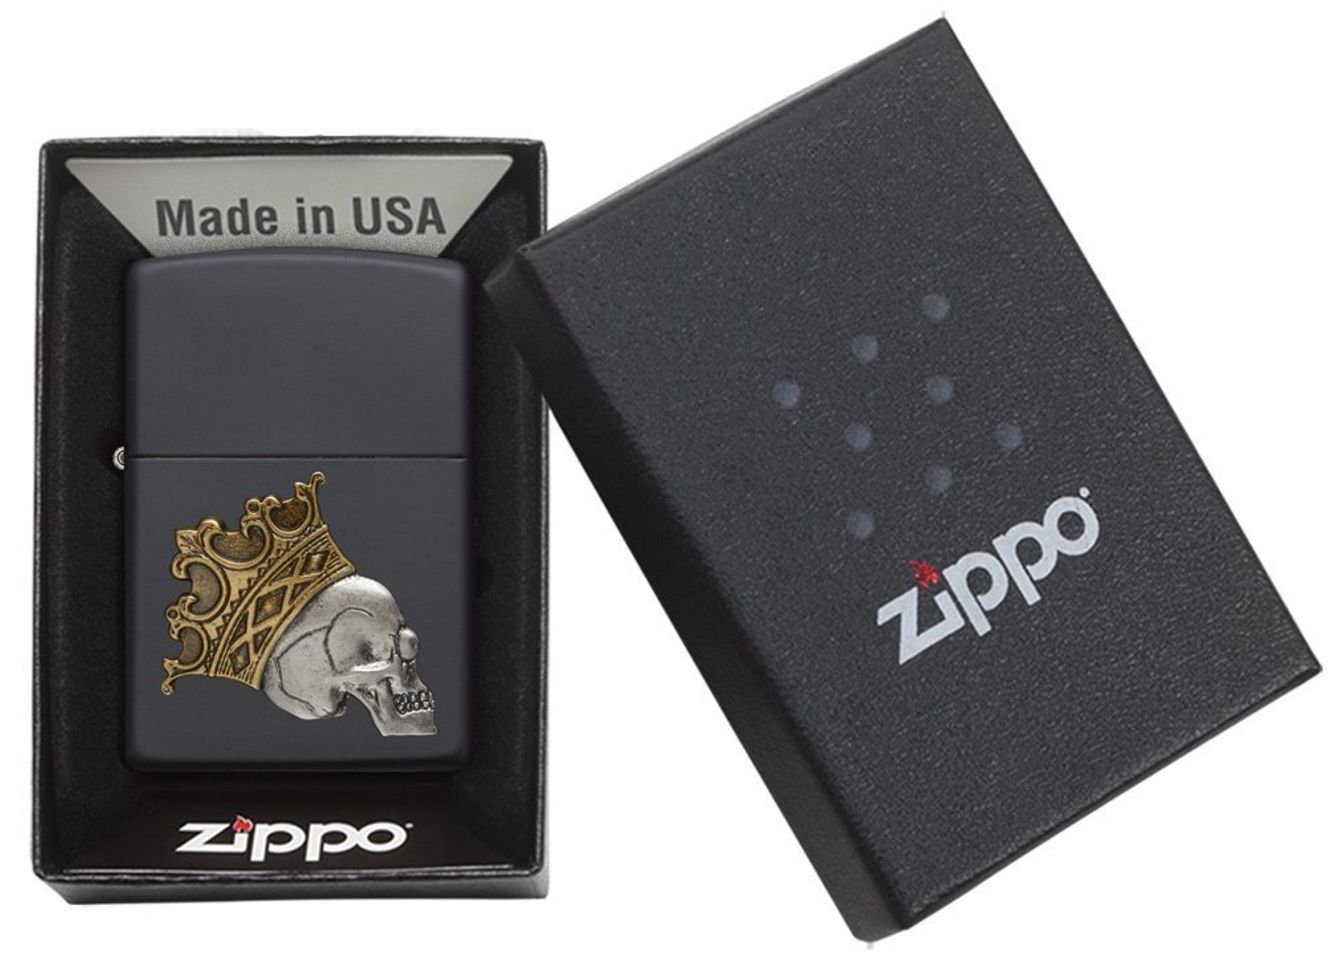 Các thành phần cấu tạo nên chiếc bật lửa Zippo Black Matte Emblem 29100 đều được nghiên cứu kỹ lưỡng và tỉ mỉ trước khi đưa vào sản xuất